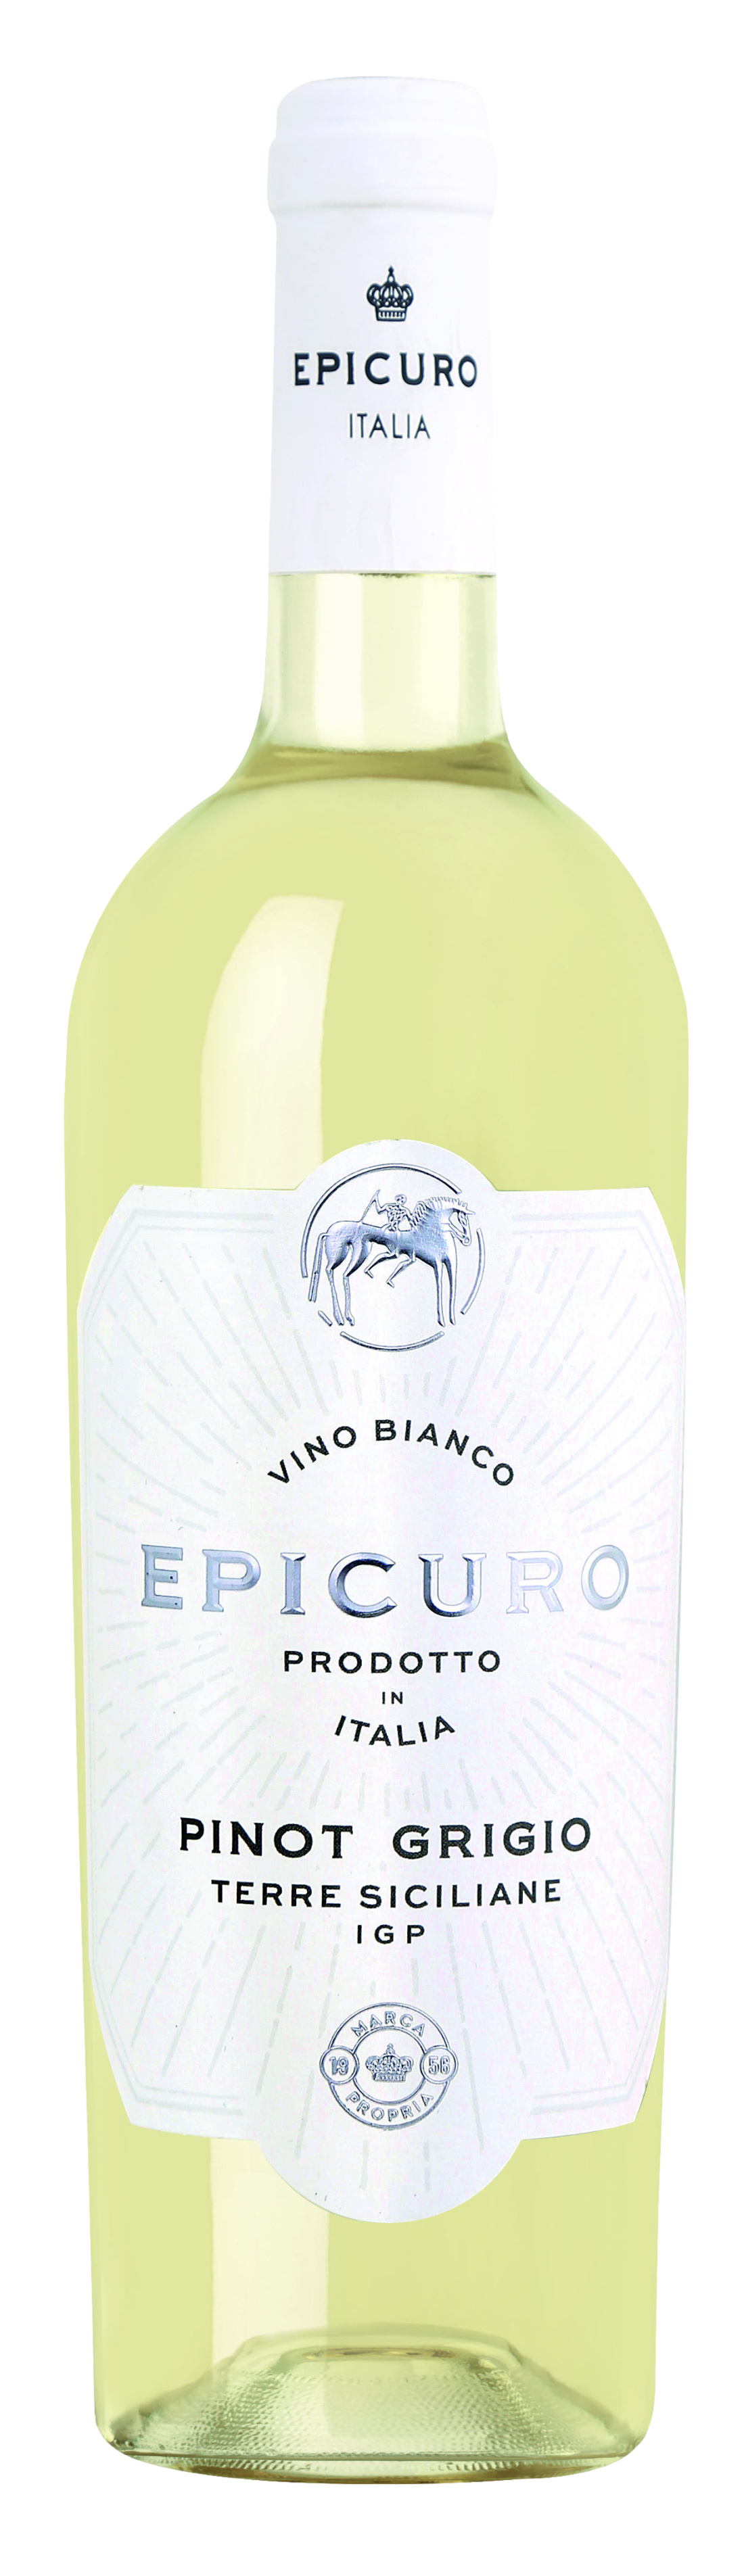 Epicuro Weißwein Probierpaket (6 x 0,75l) + VINOX Winecards